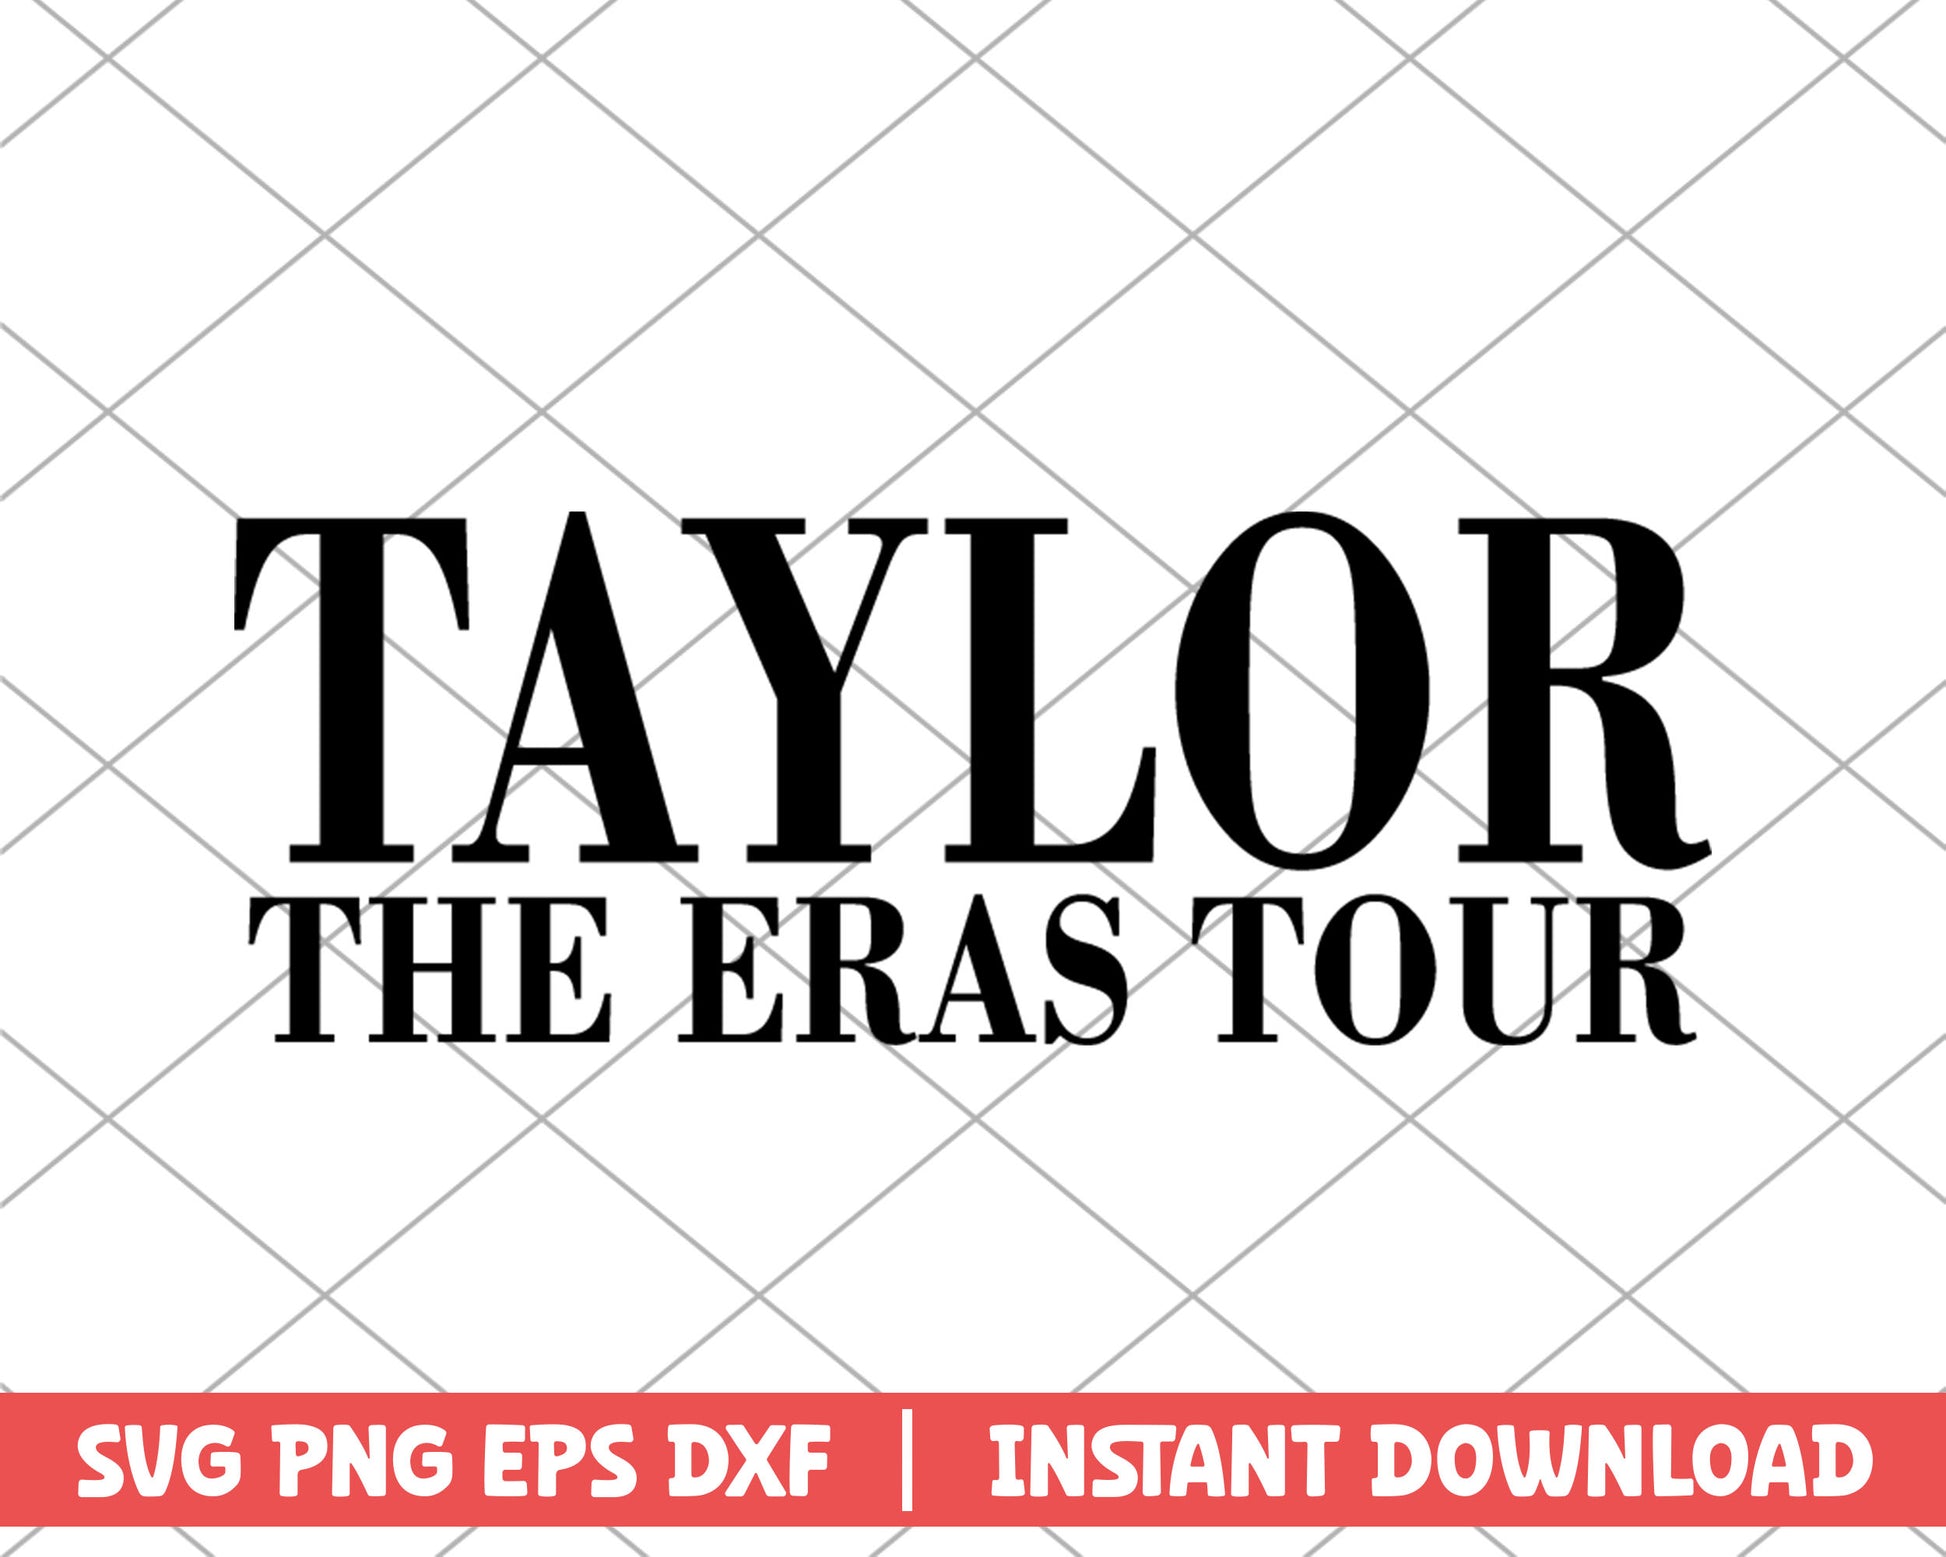 The eras tour taylor swift svg